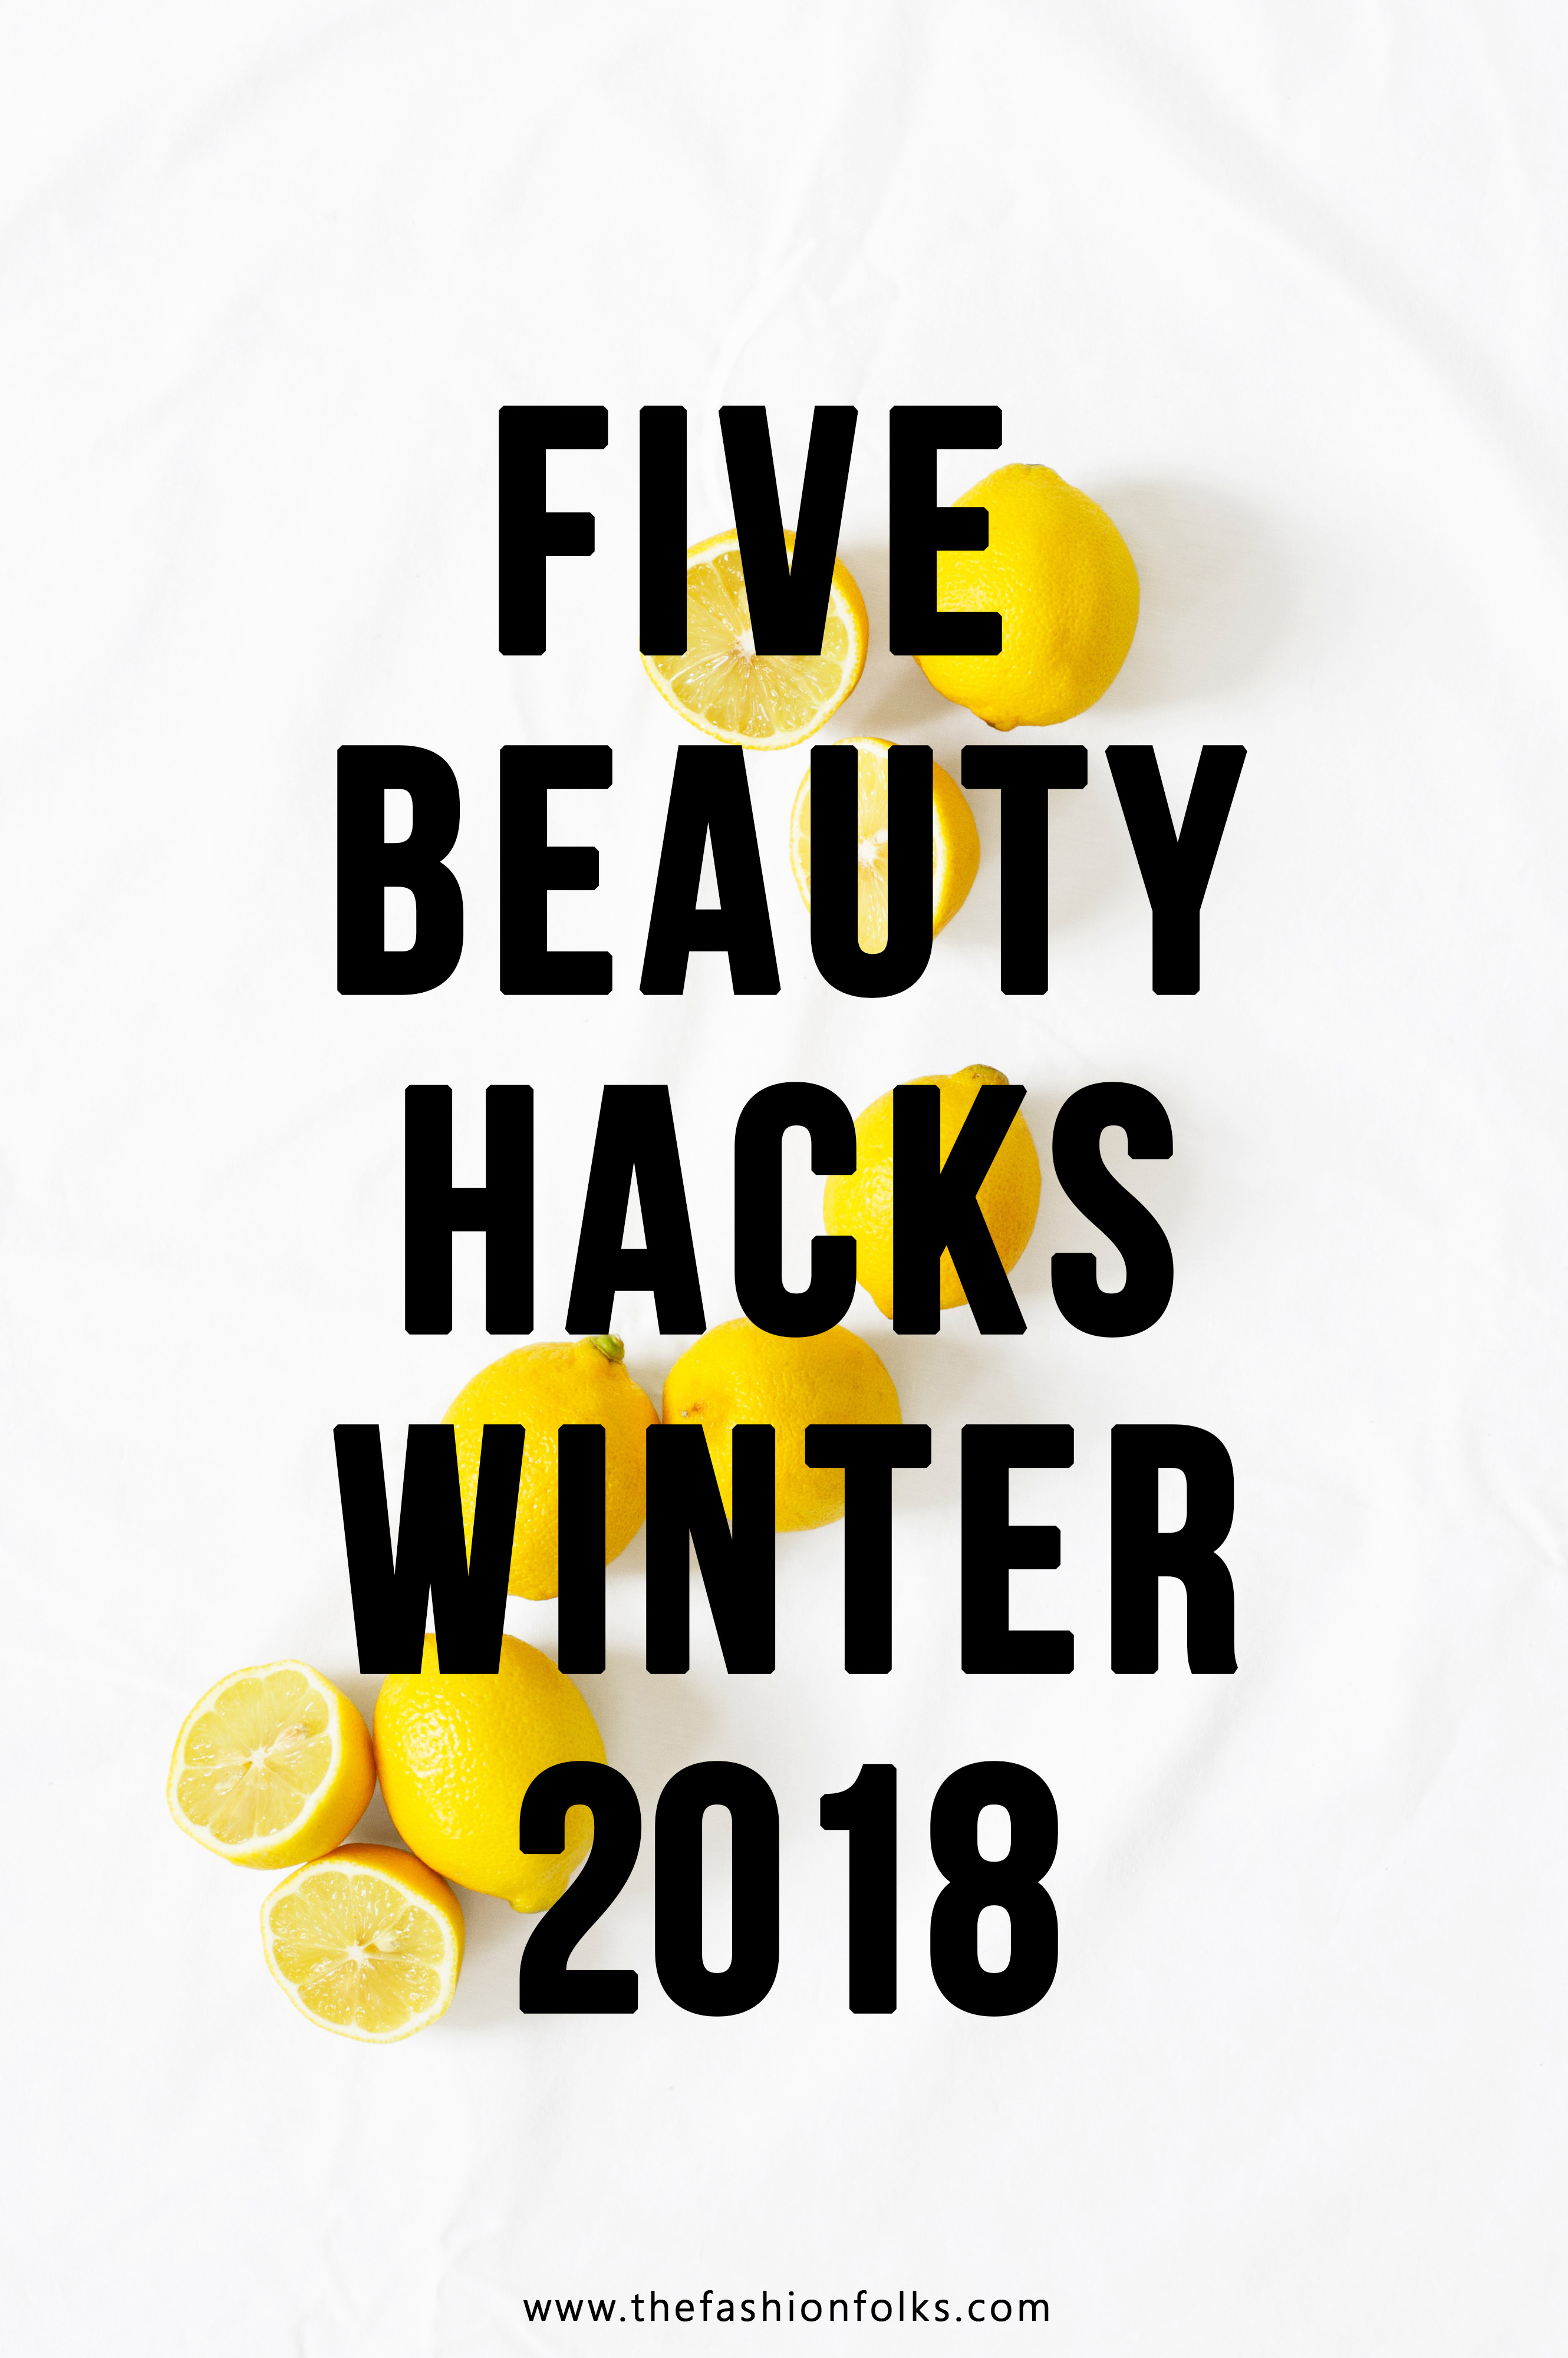 Five Beauty Hacks Winter 2018